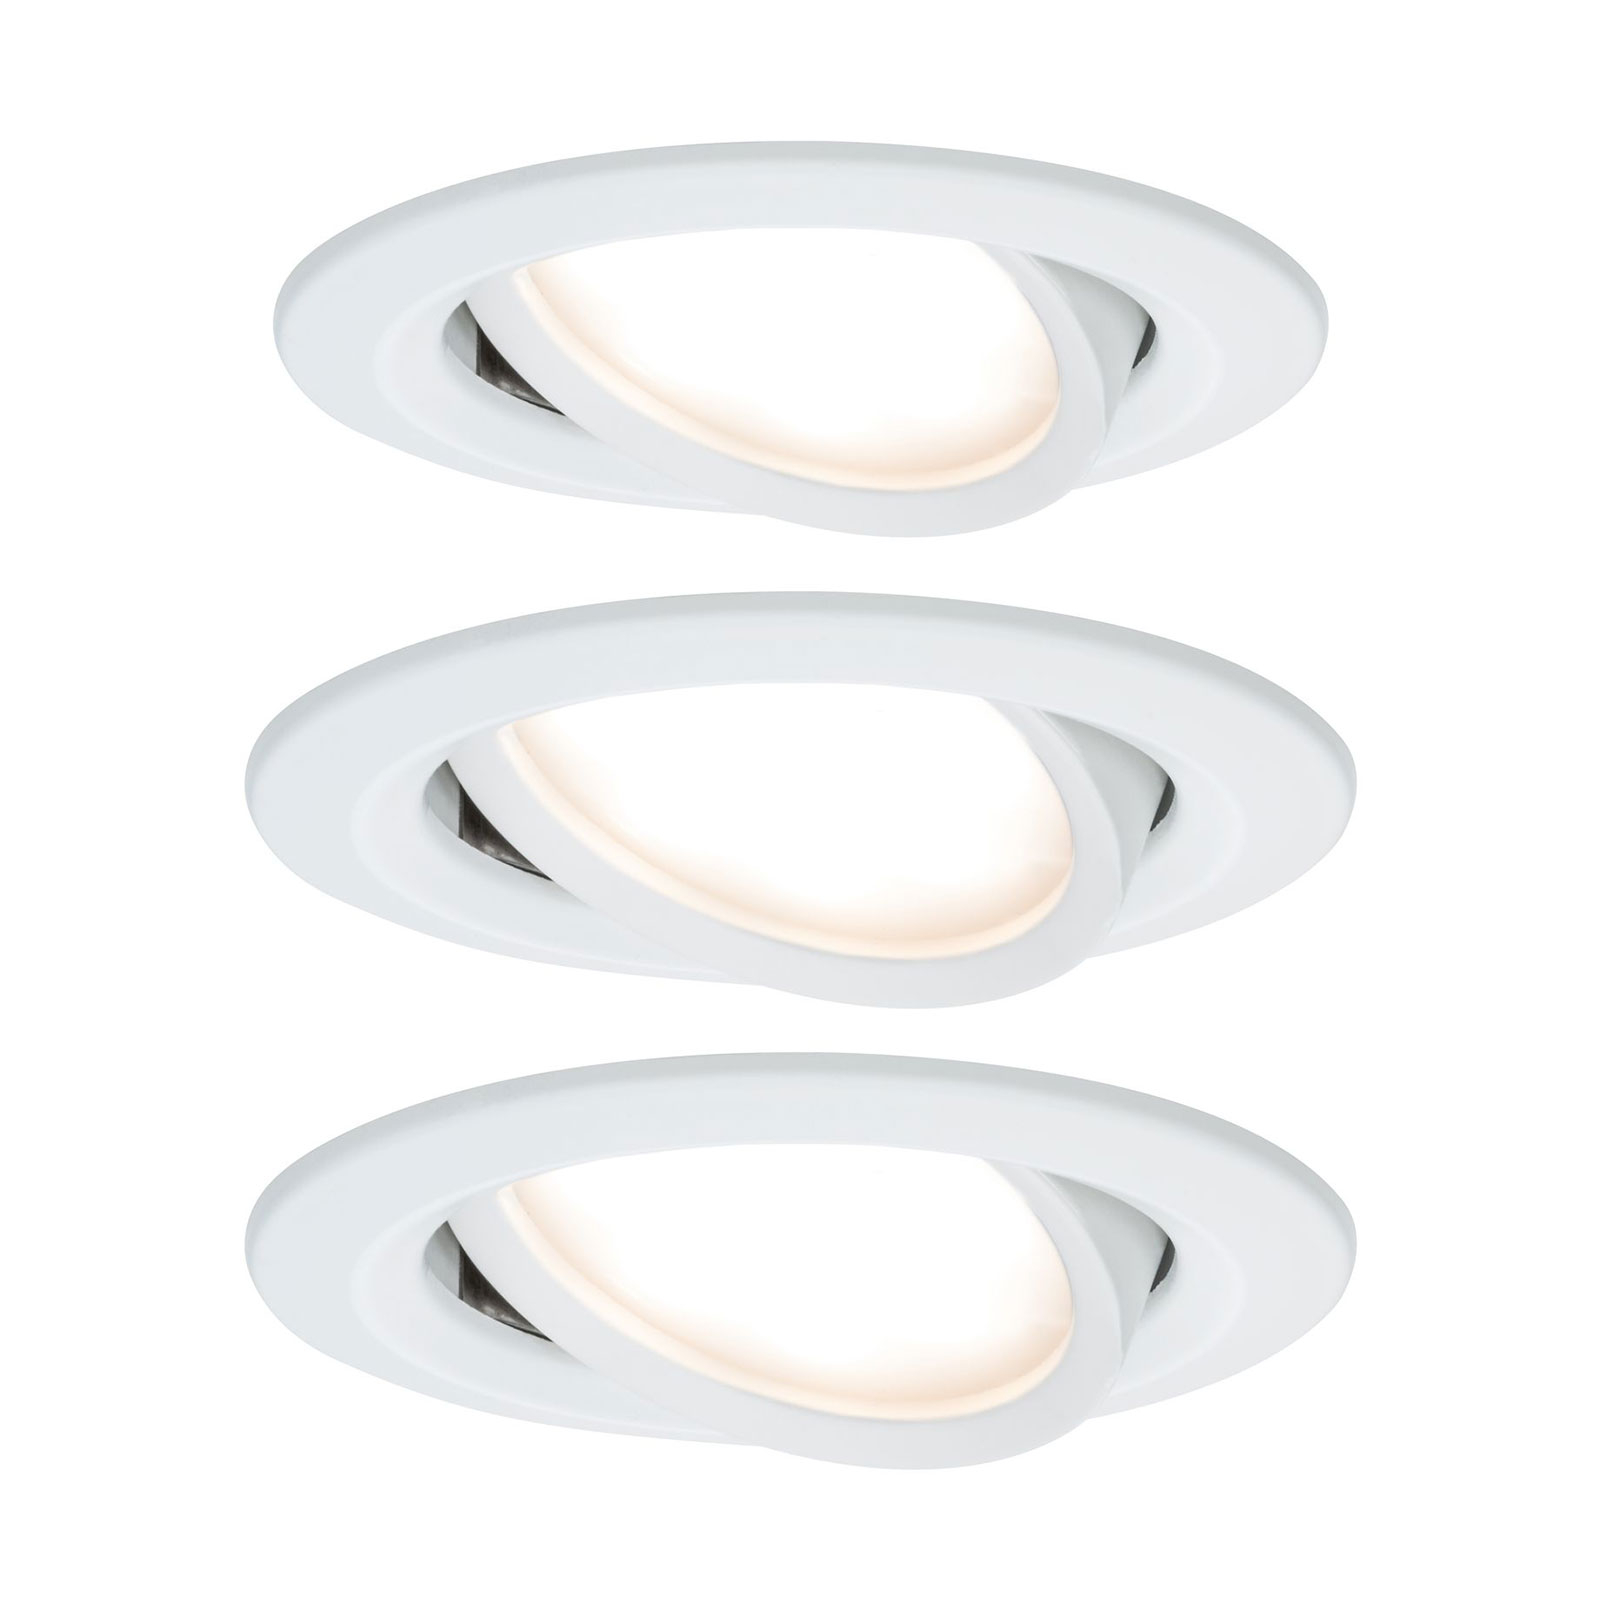 Paulmann Nova LED-downlight 3er, roterbar, hvit